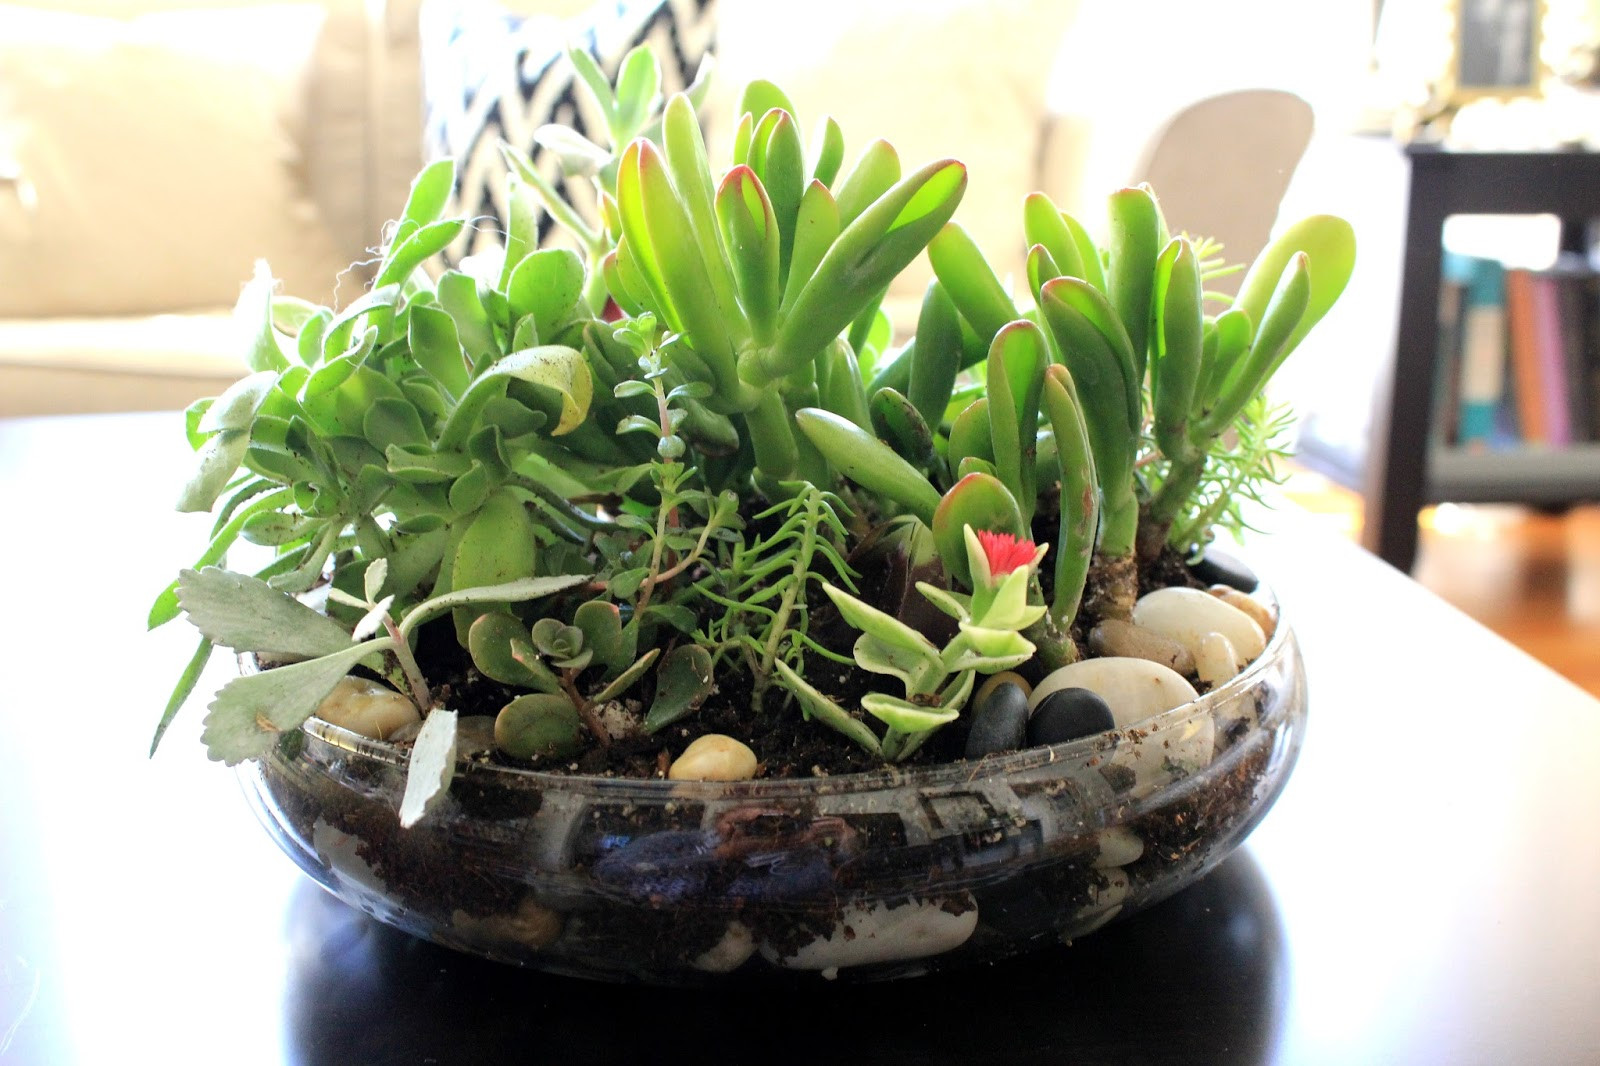 Best ideas about Succulent Terrariums DIY
. Save or Pin Cup Half Full Succulent Terrarium DIY Now.